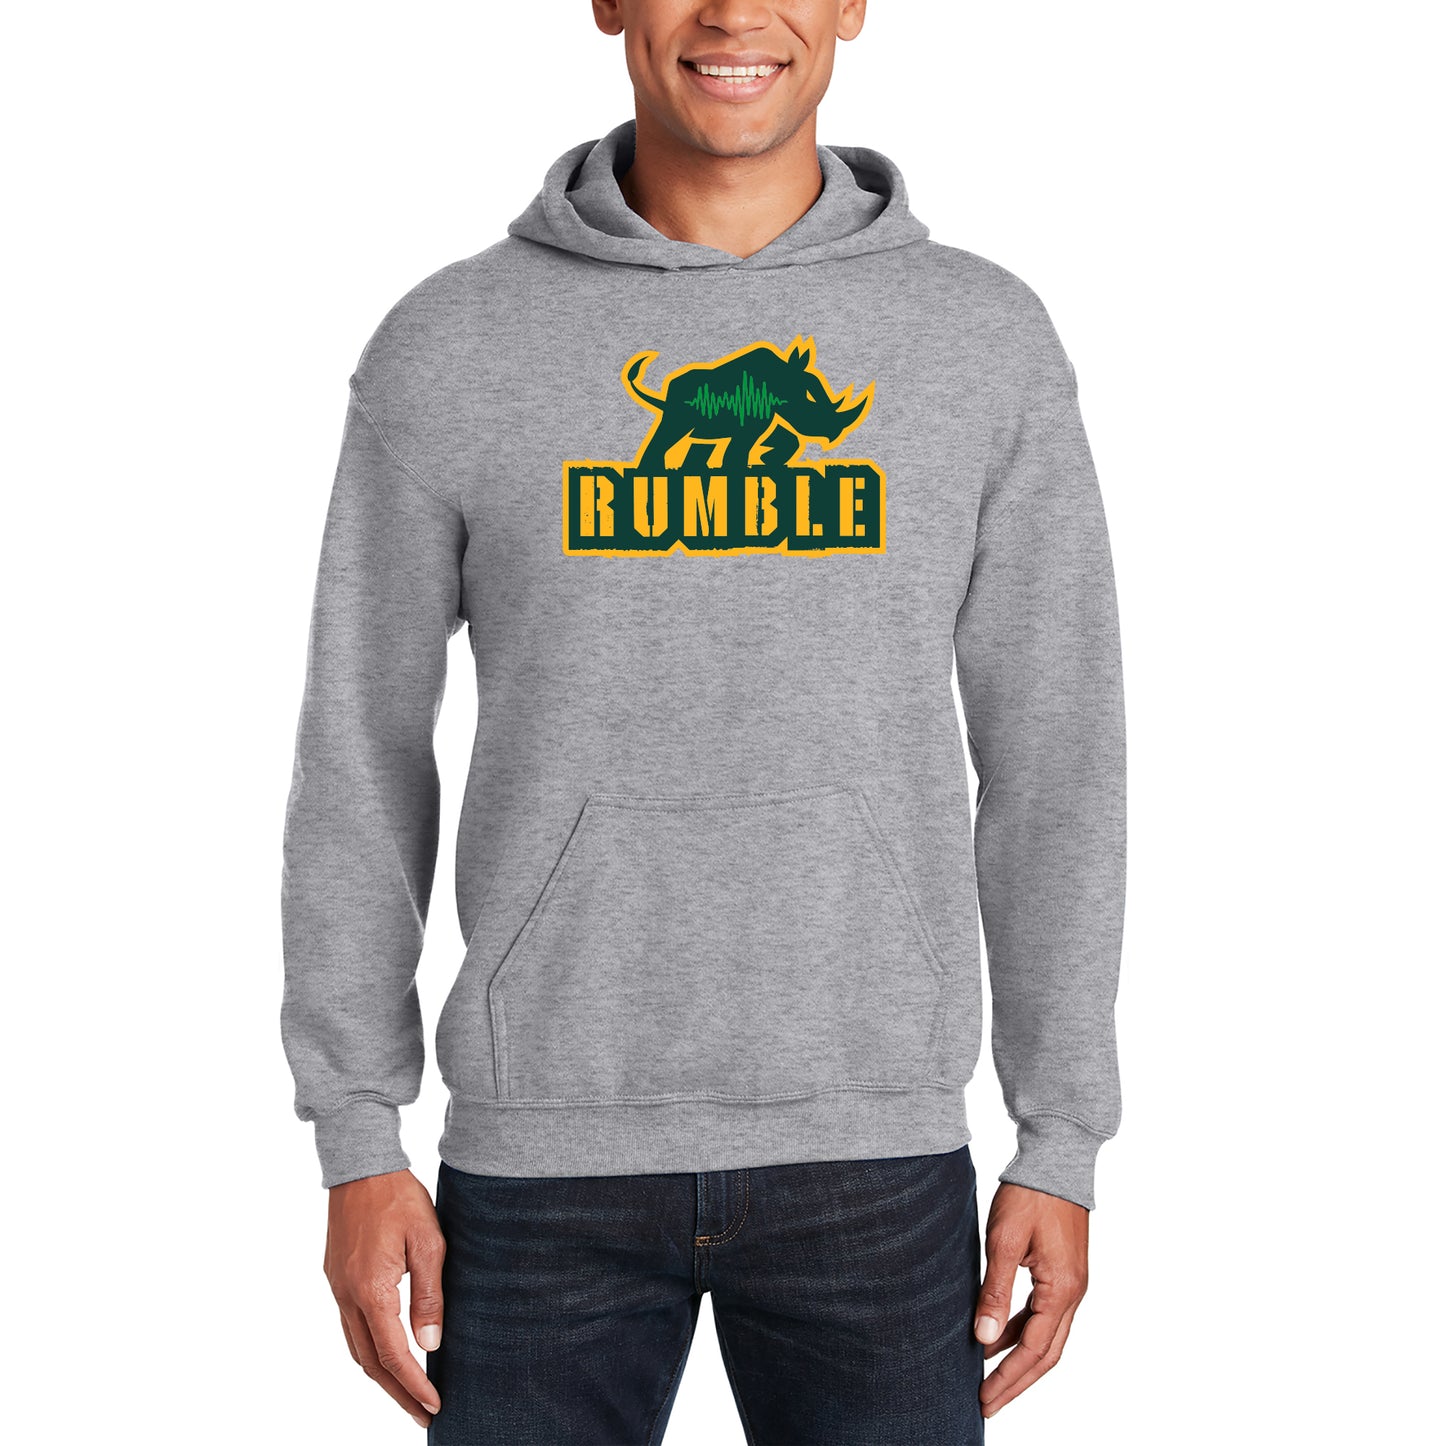 RUMBLE - Team Hoodie - Sports Grey